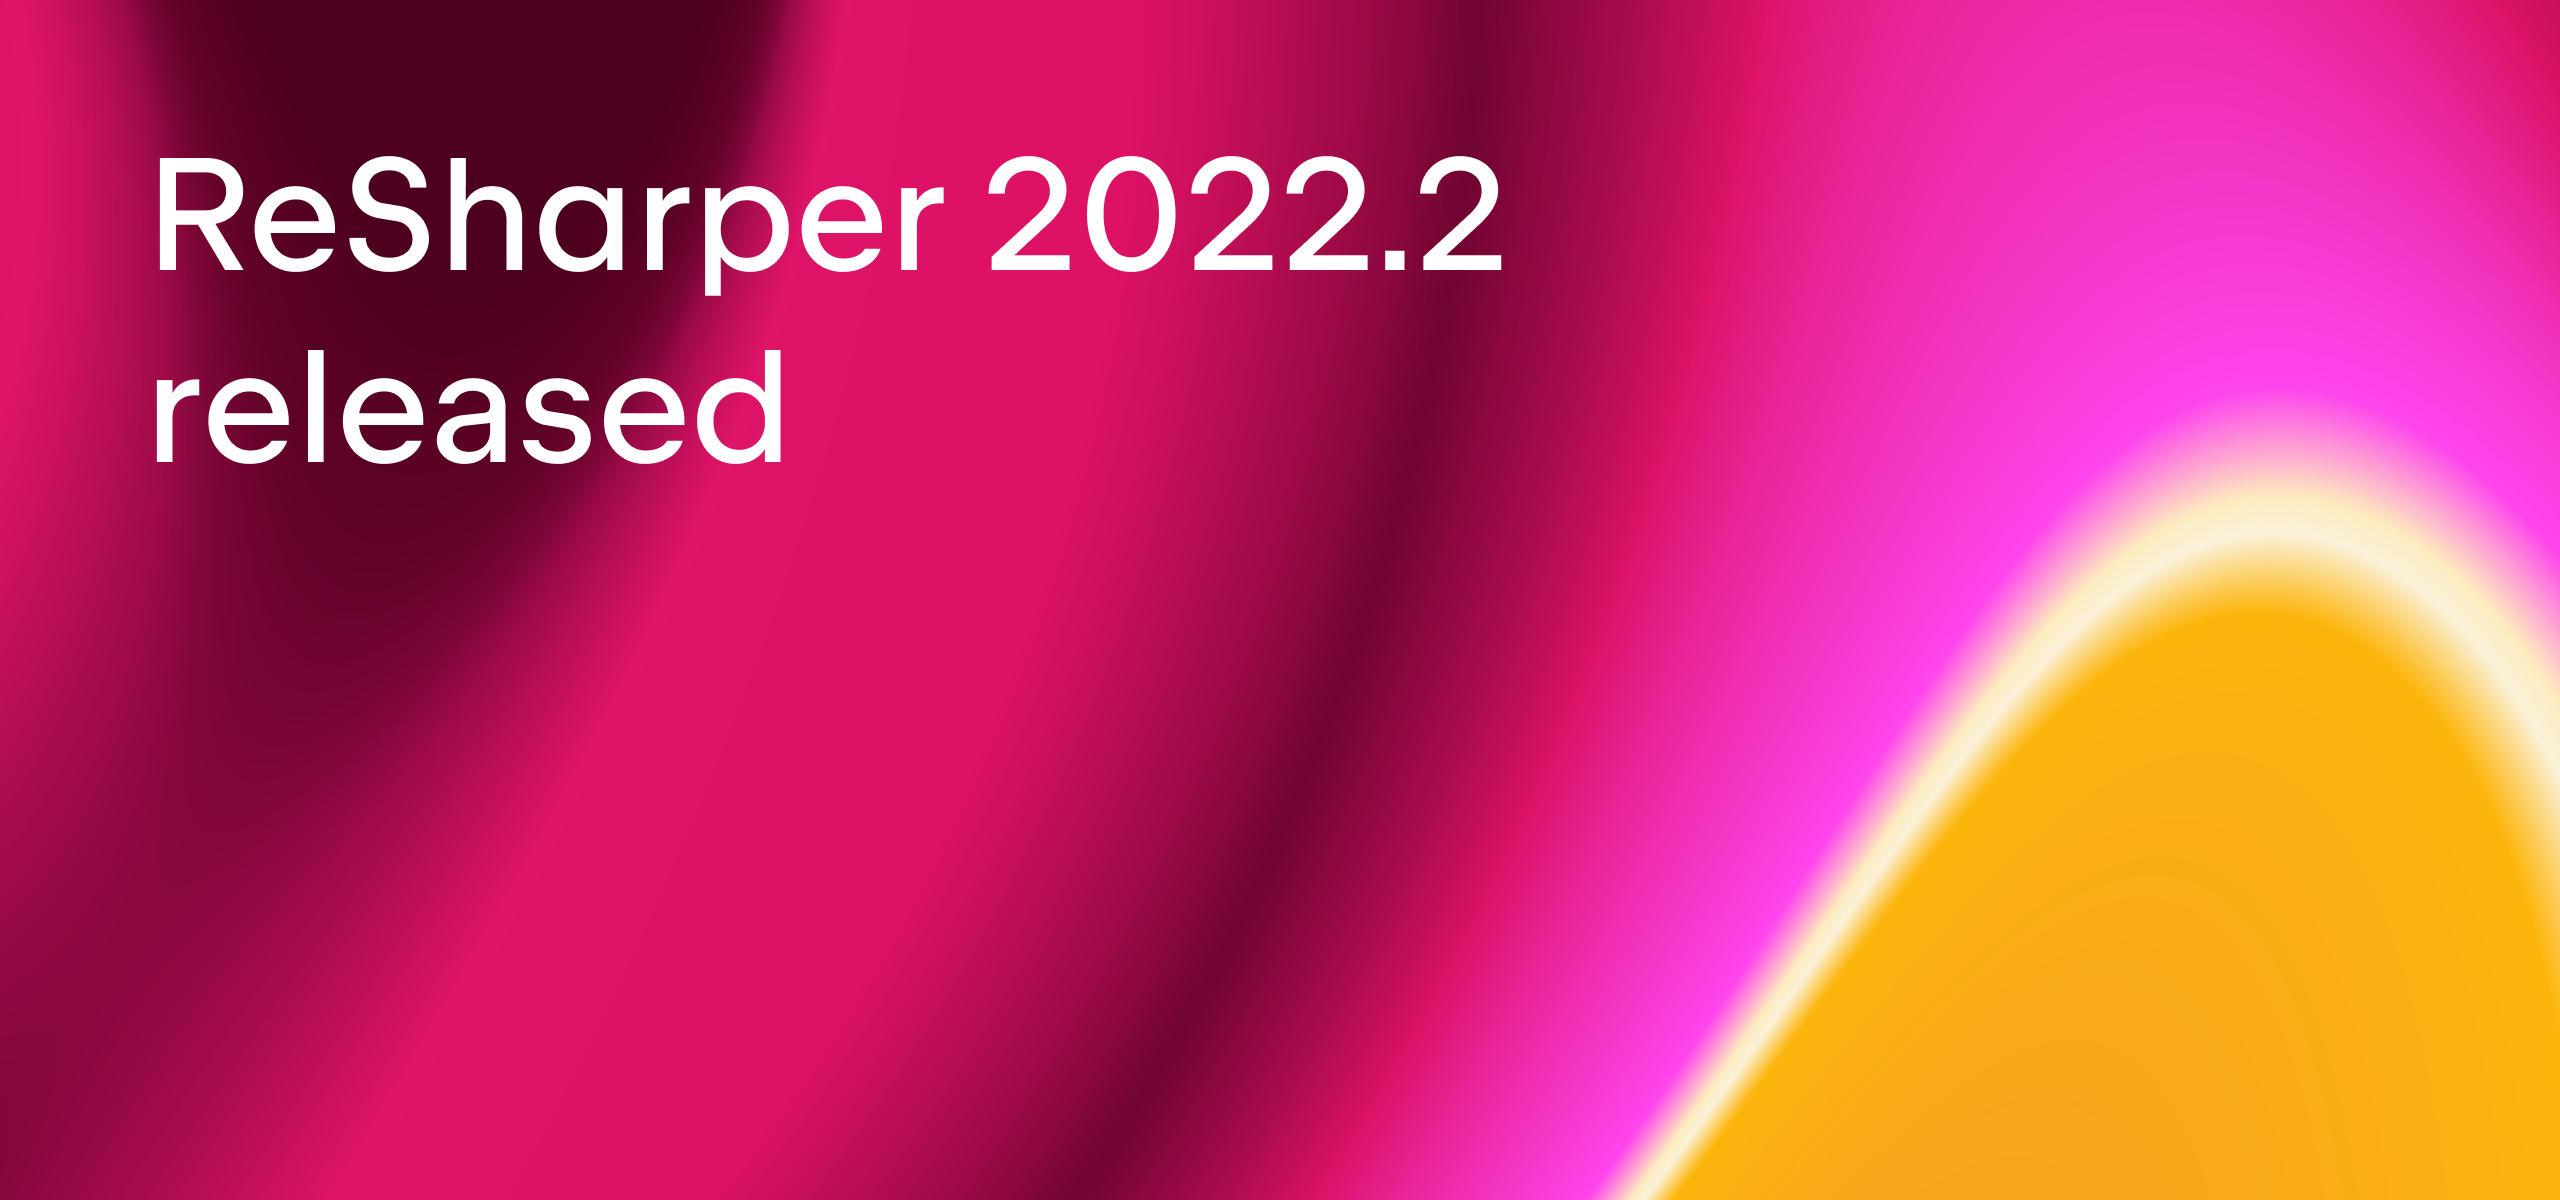 ReSharper 2022.2 released